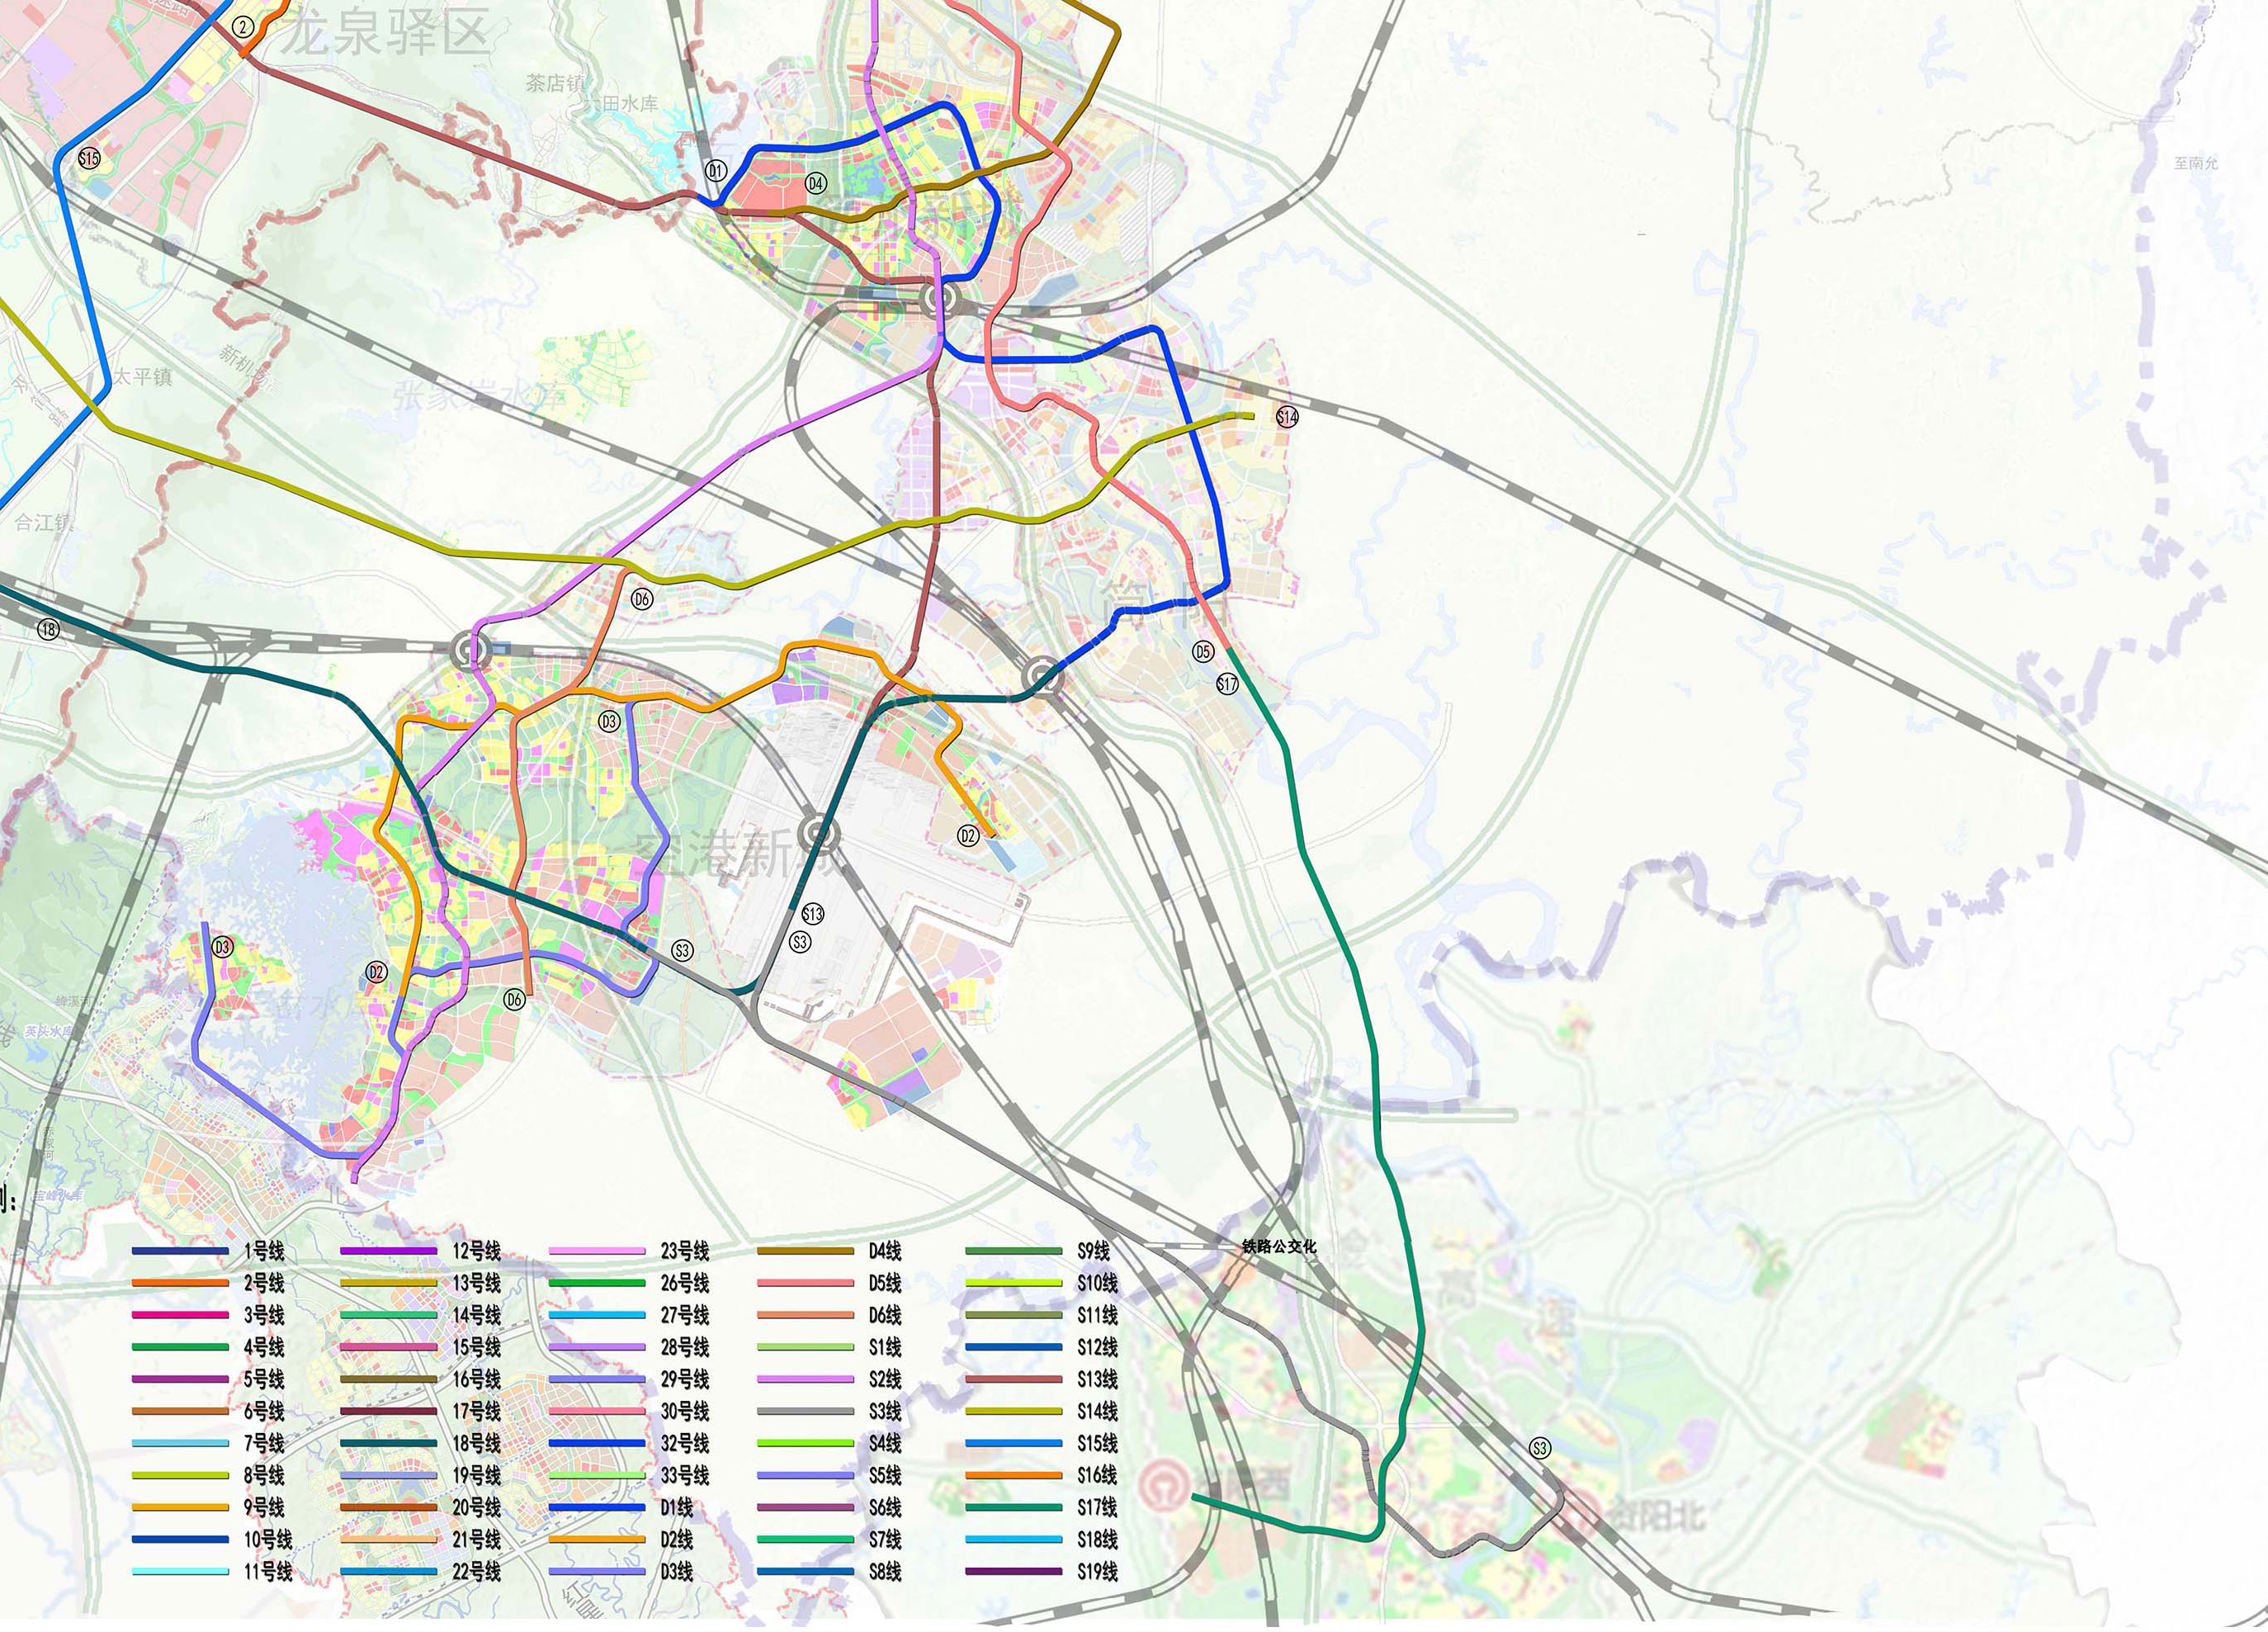 成都市城市轨道交通线网规划发布,市域铁路s17线抵达资阳西站